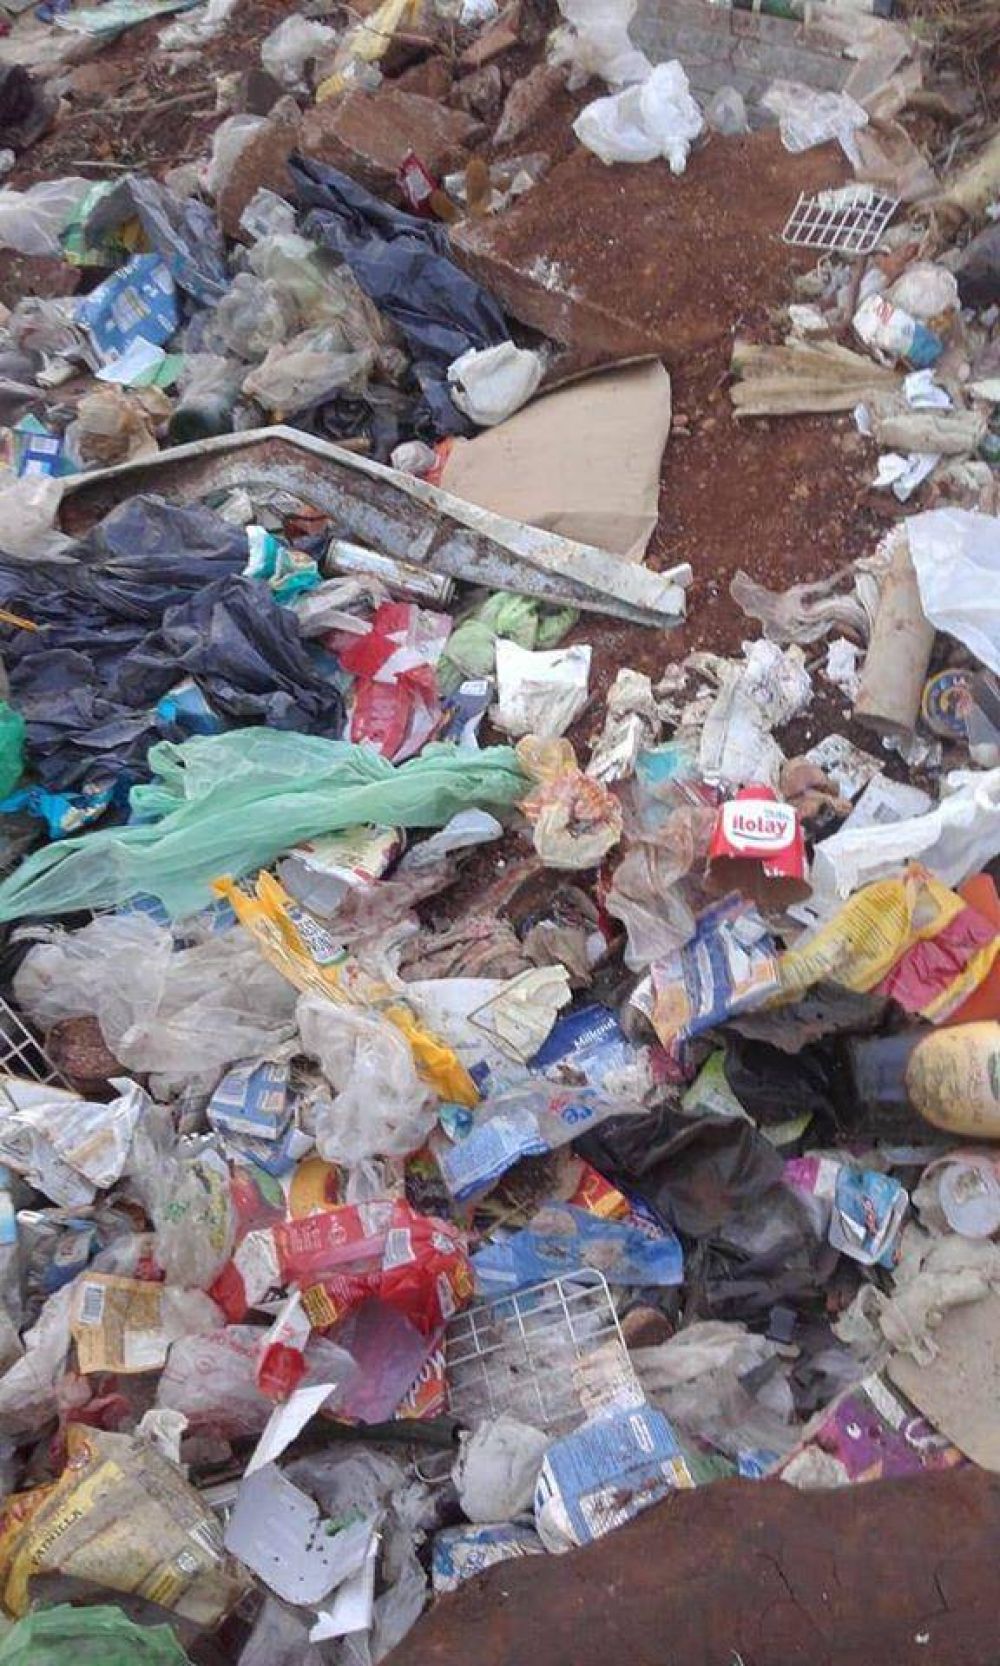 Santo Pip: reclaman erradicar basural a cielo abierto que contamina a familias del barrio Apep